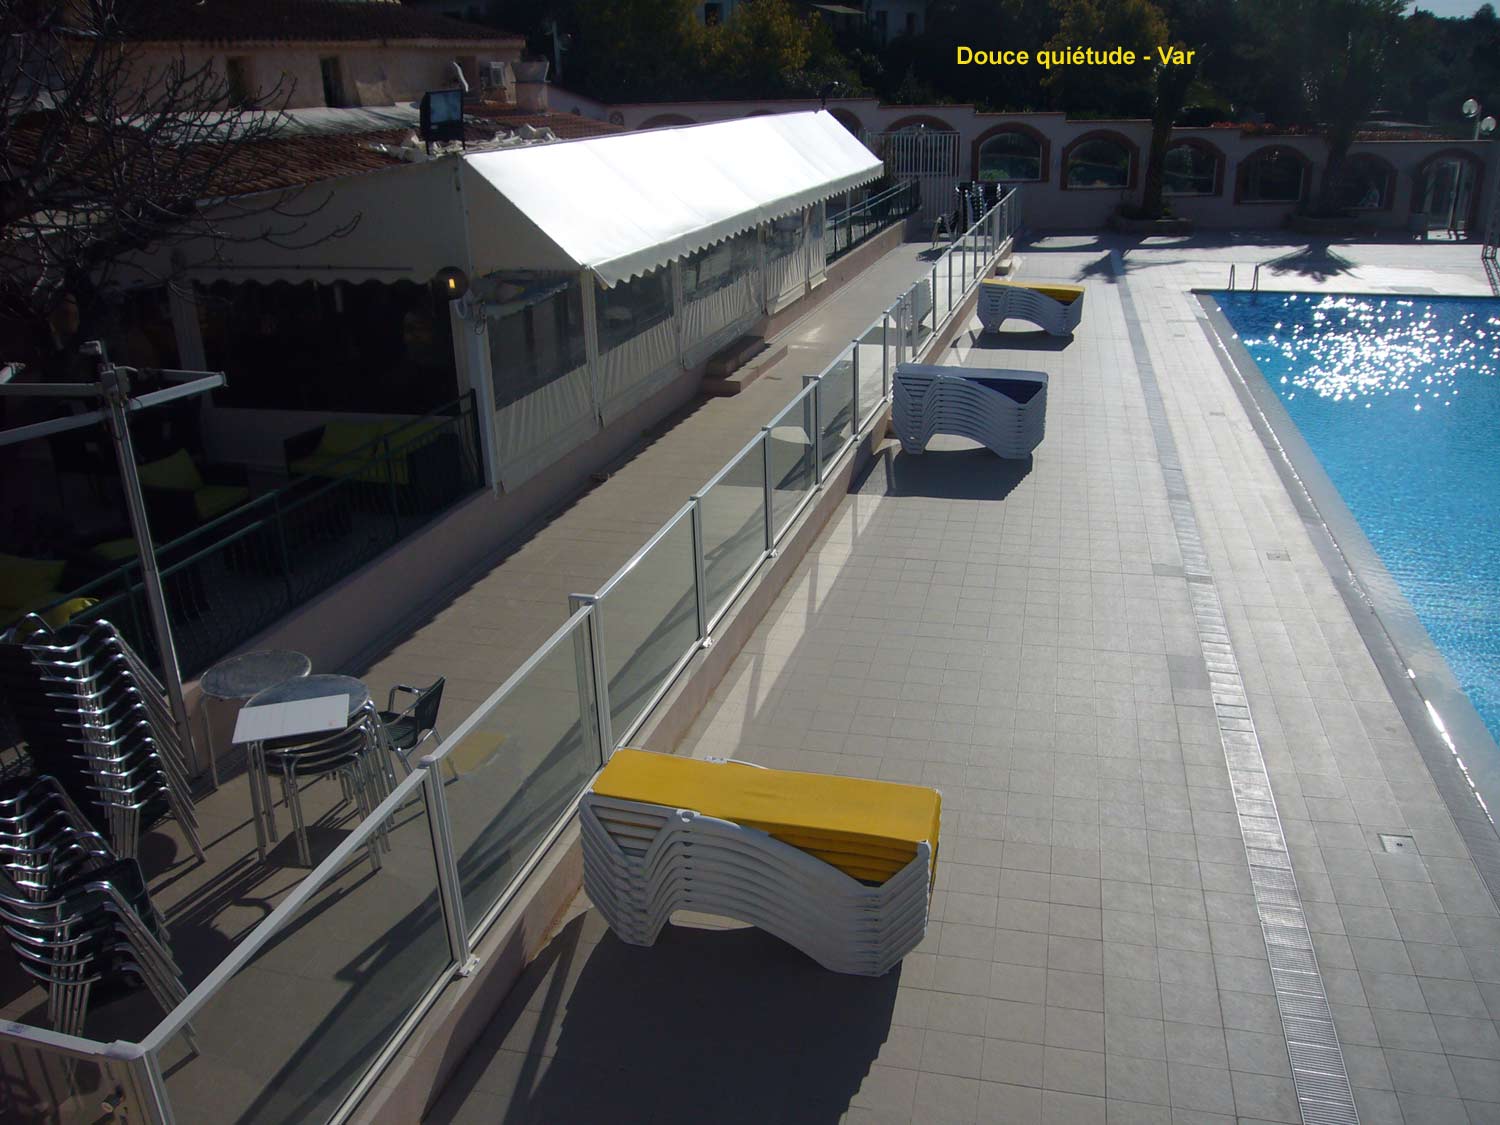 barrière de piscine en verre et barreaux dans le camping - Douce quiétude dans le Var - clôturant un superbe équipement paysagé avec plusieurs bassins de piscine